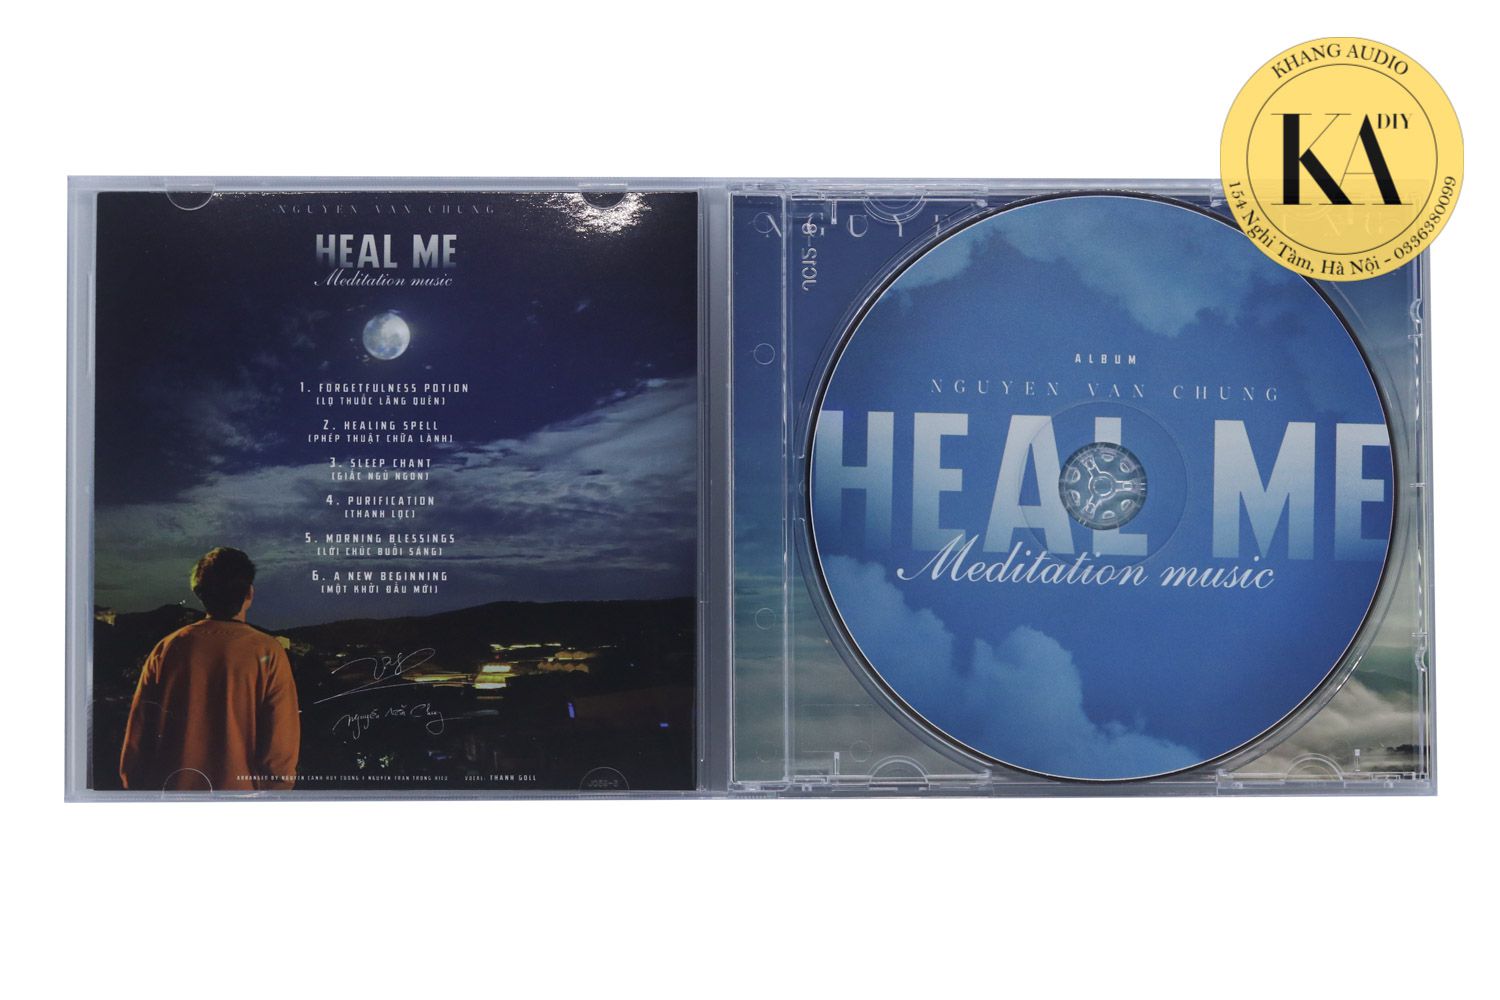 Heal Me -Nguyễn Văn Chung Khang Audio 0336380099